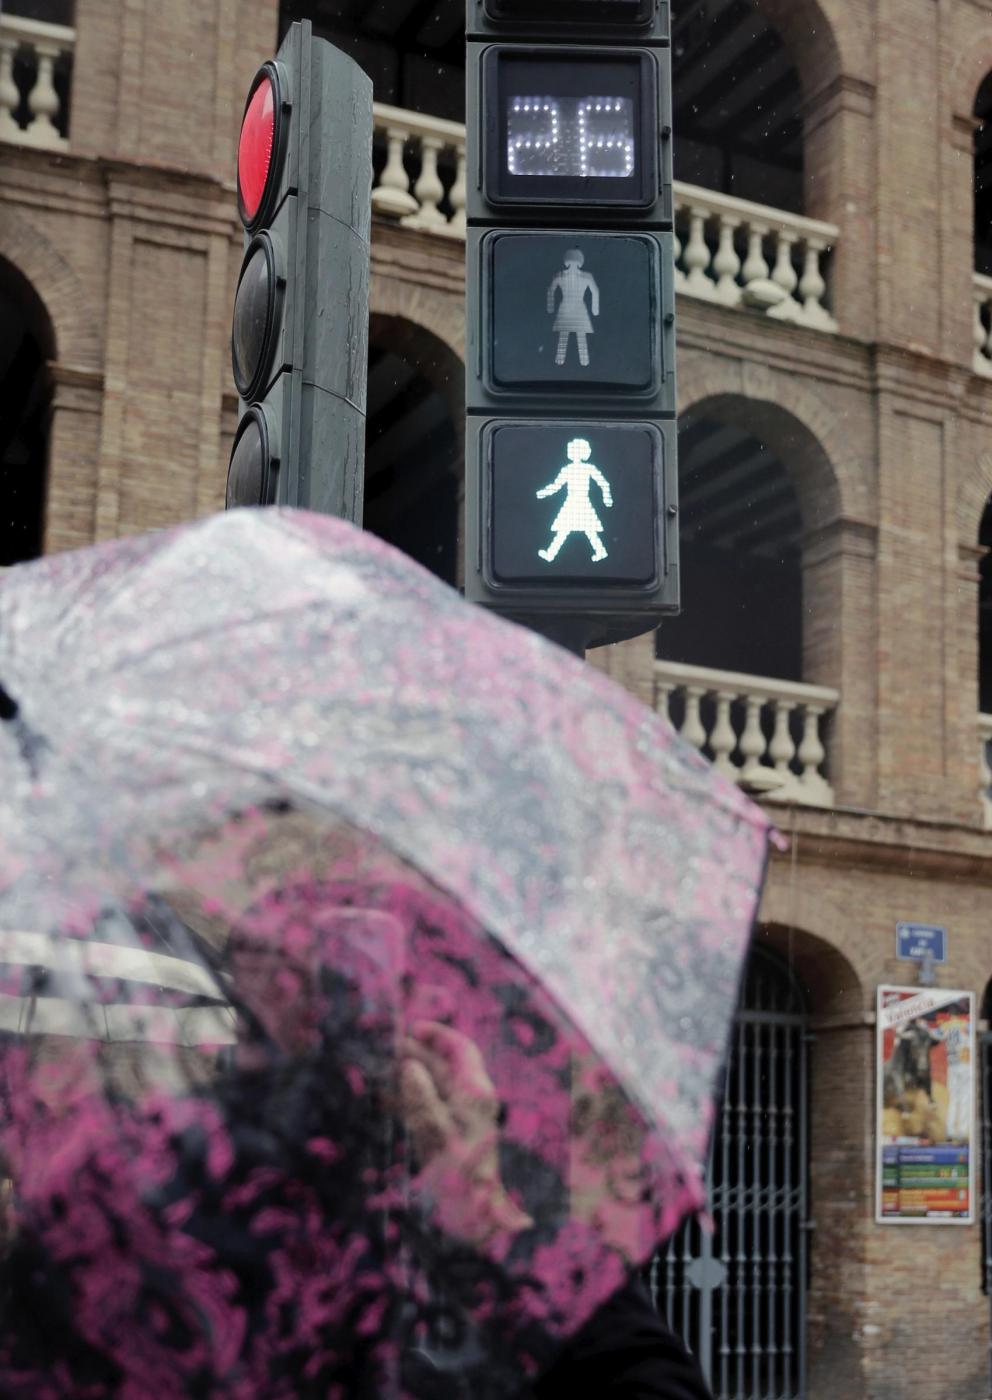 Valencia semafori per la parita di genere